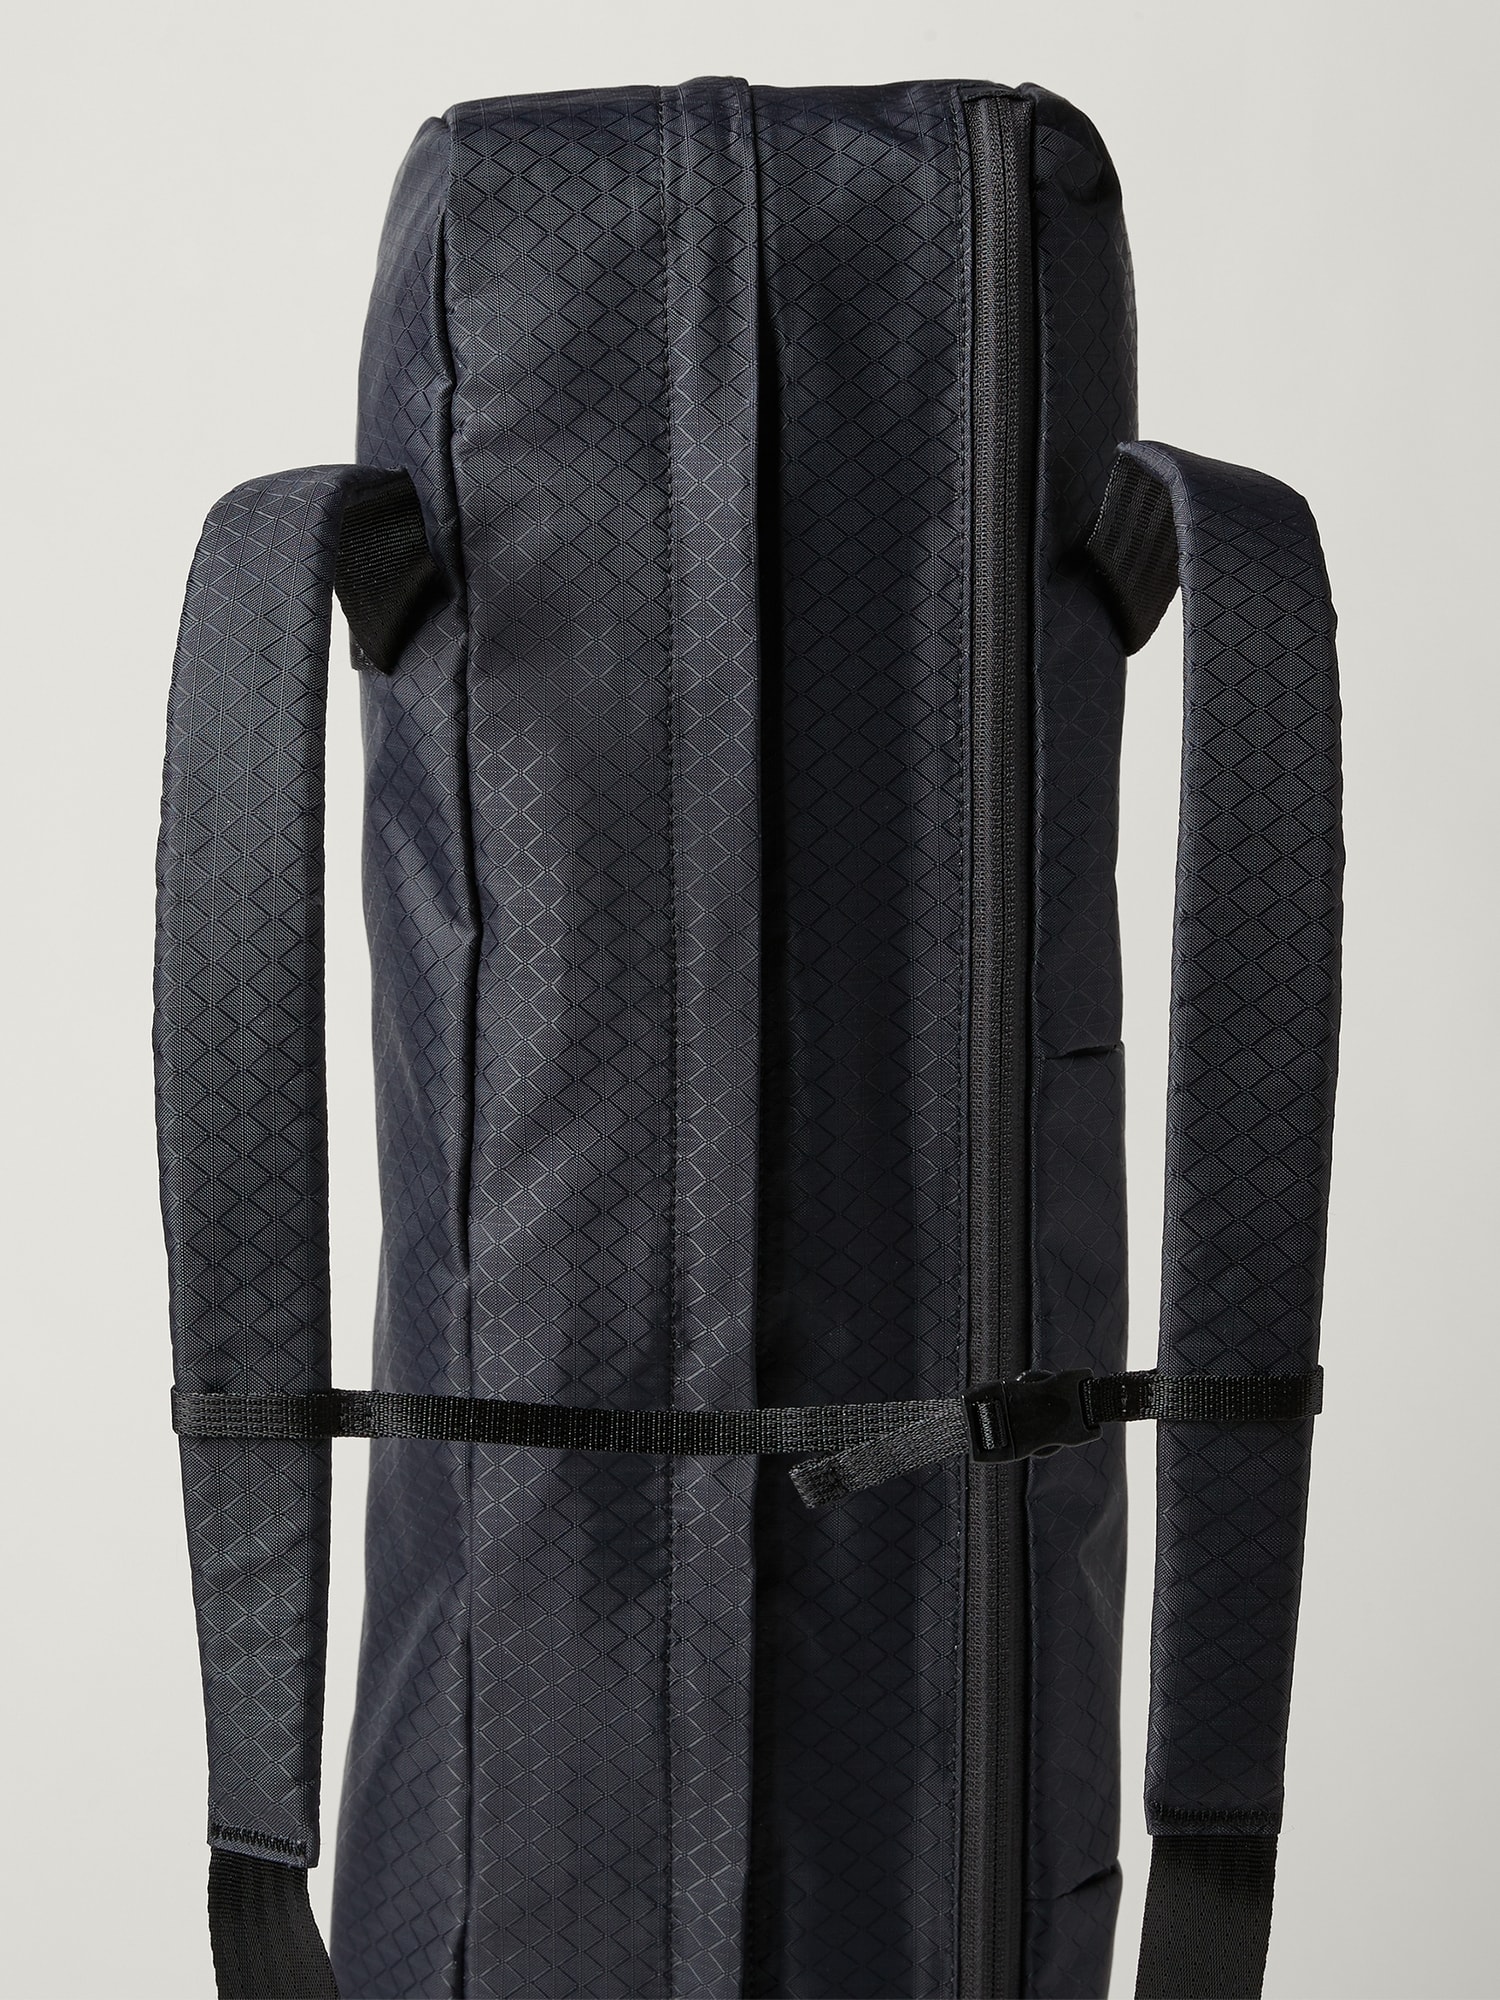 Evolve Yoga Mat Bag Black Gray Pockets Shoulder Strap Full Zip NWOT